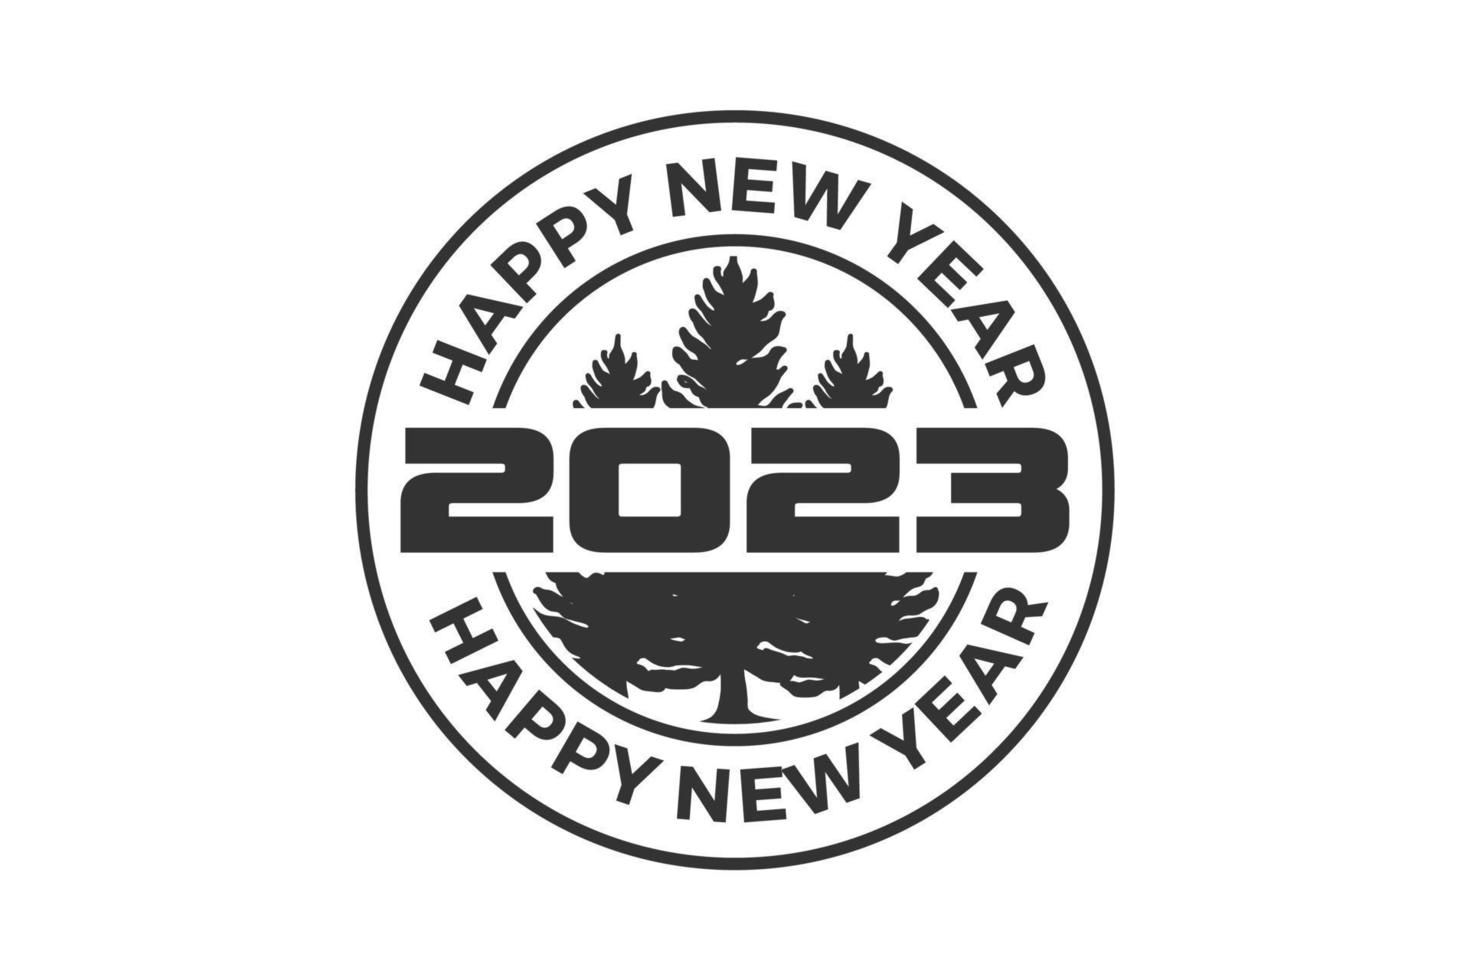 Frohes neues Jahr 2023 in Kreisform. geeignet für grüße, stempel, einladungen, banner oder hintergrunddesign von 2023. vektordesignillustration. vektor